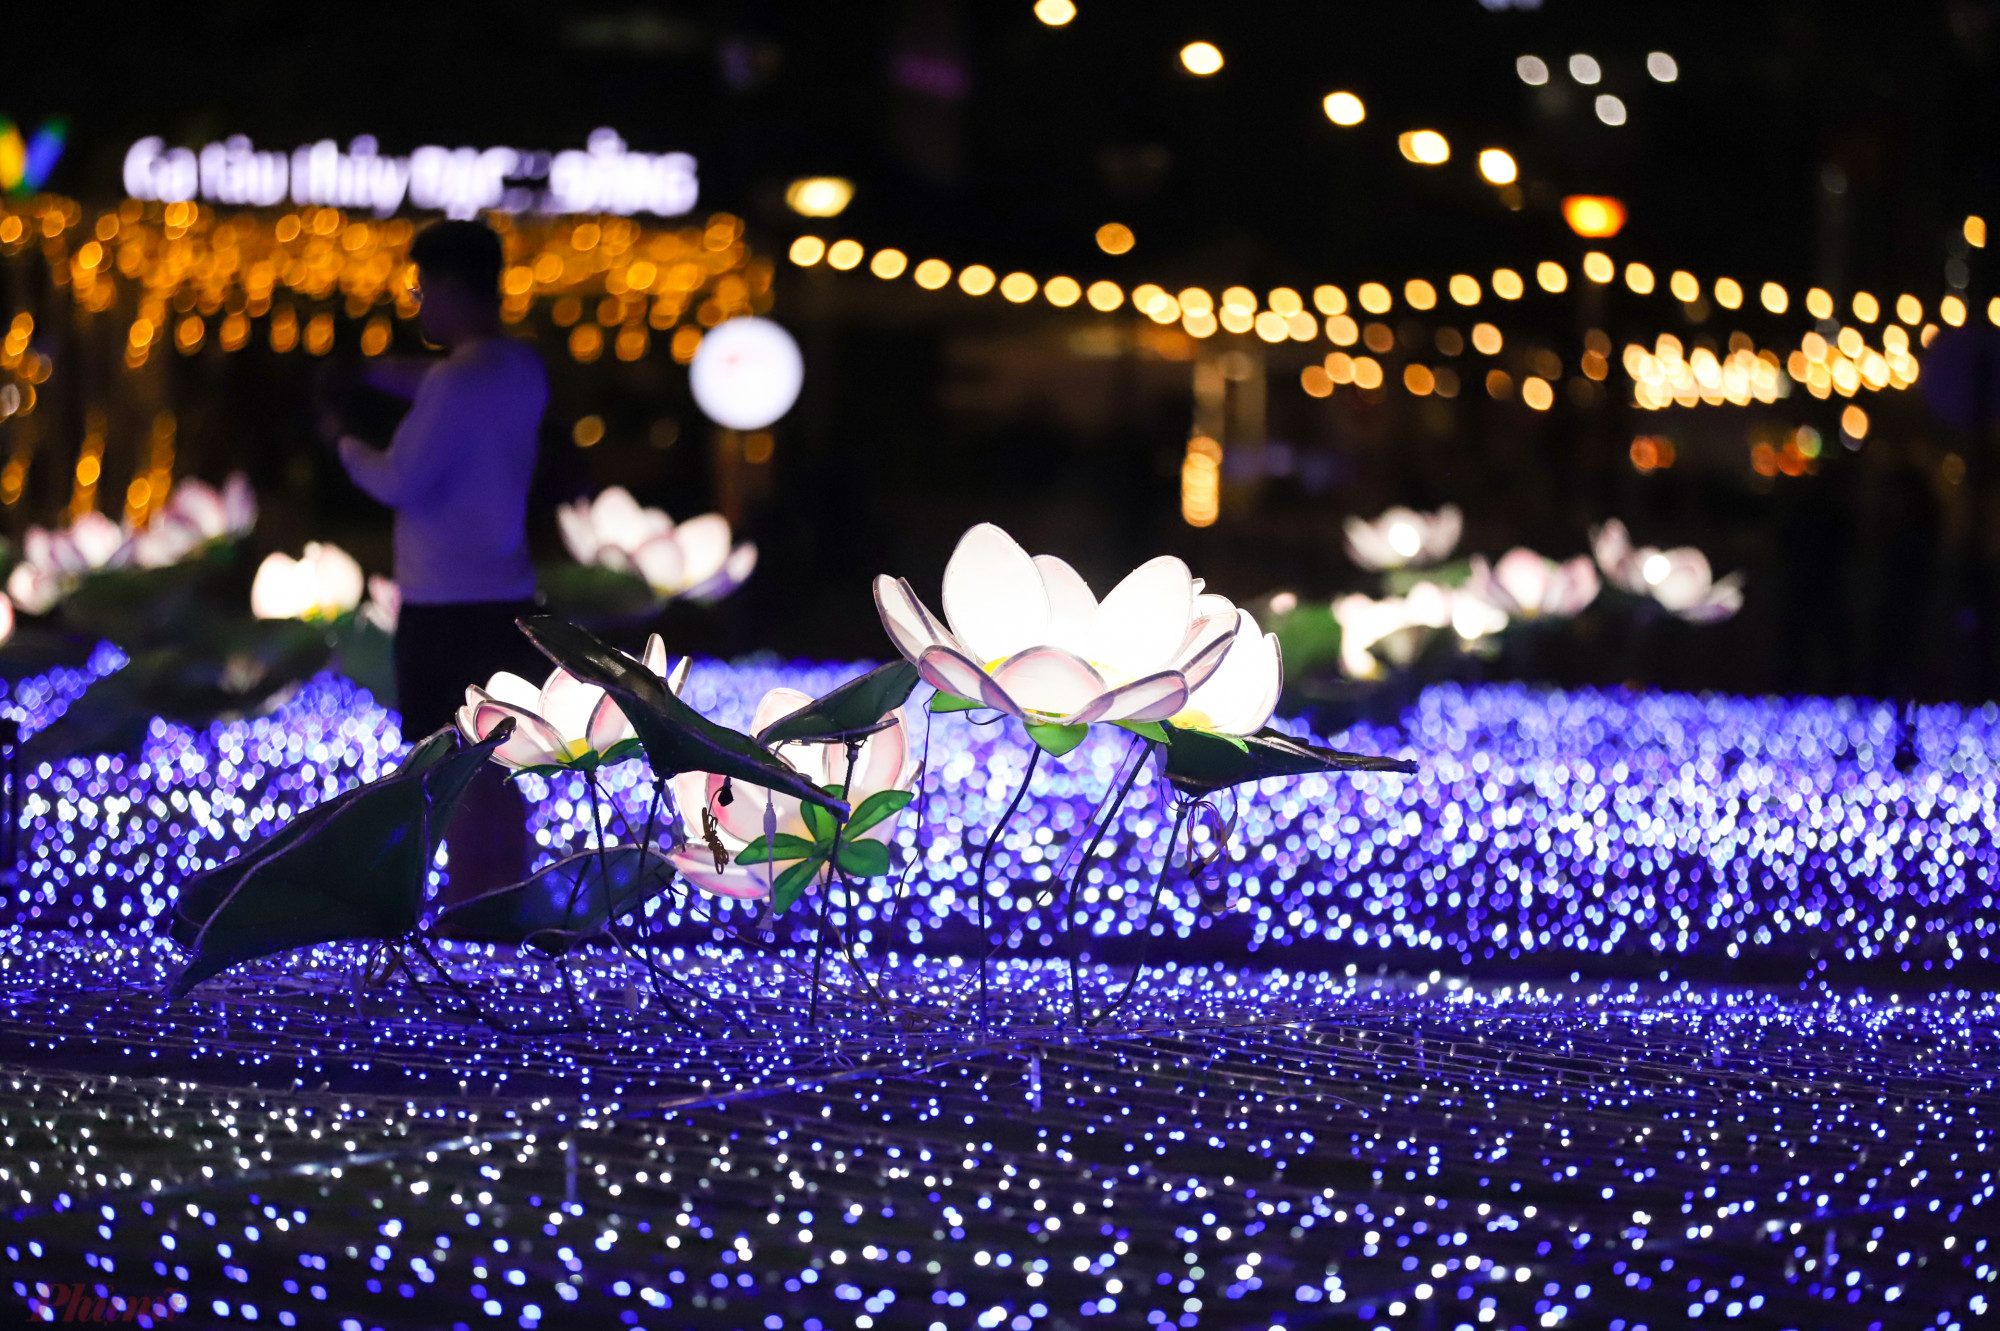 oạt động trang trí đèn nghệ thuật xoay quanh 2 chủ đề chính là Hồ Sen Việt Nam được lấy cảm hứng từ những đóa sen nở tươi tắn khoe sắc trên nền nước trong xanh và Khu vườn Sakura, loài hoa đặc trưng của đất nước Nhật Bản. 